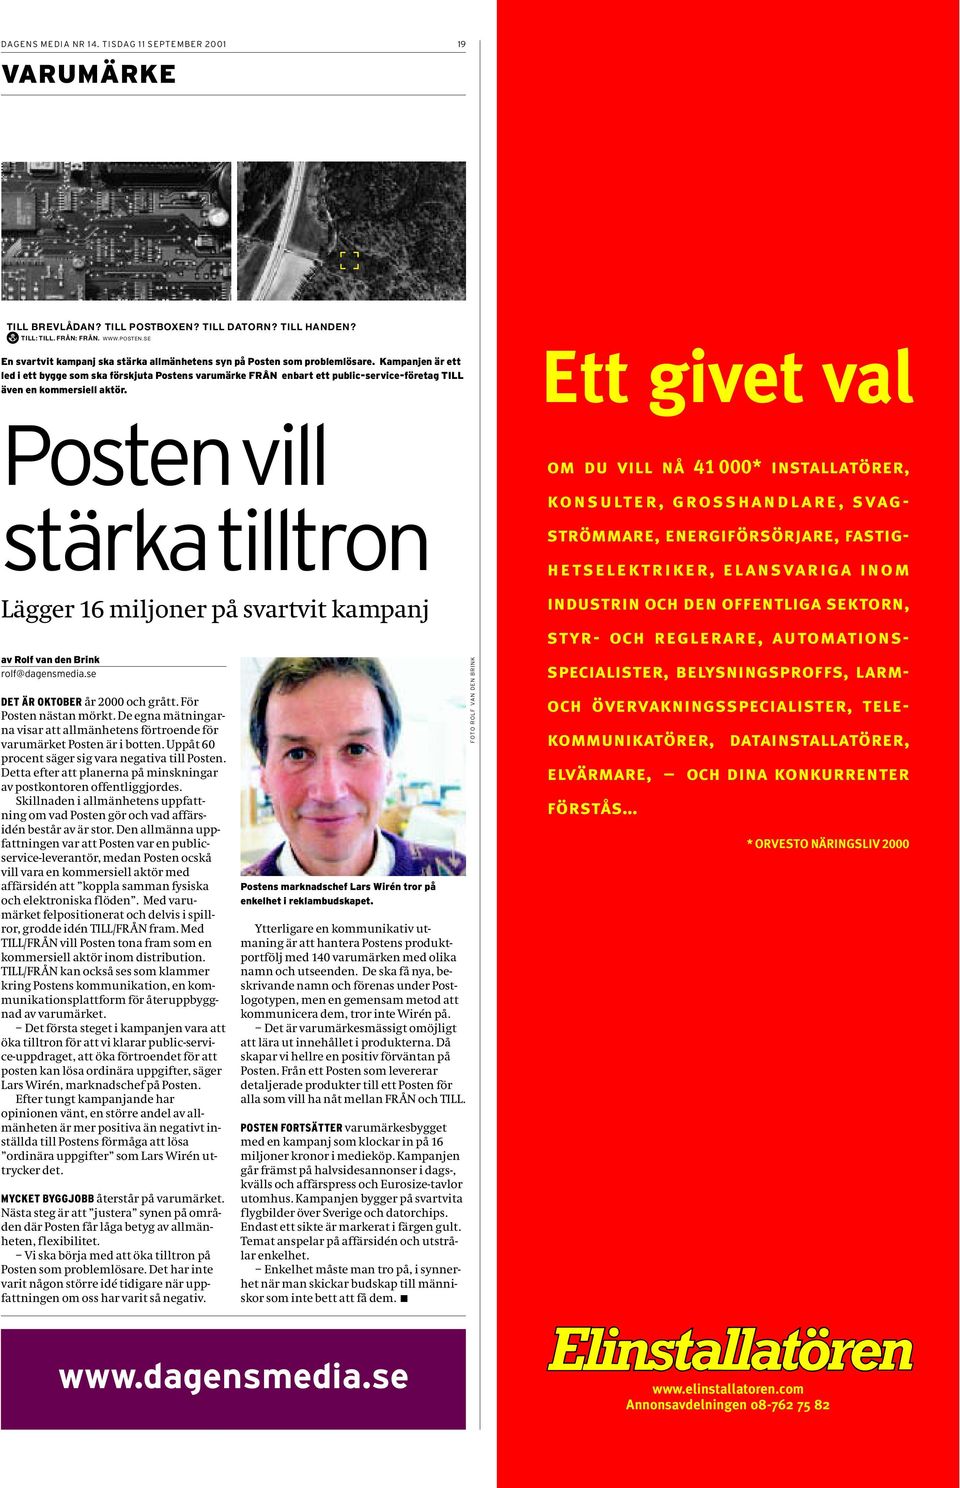 Kampanjen är ett led i ett bygge som ska förskjuta Postens varumärke FRÅN enbart ett public-service-företag TILL även en kommersiell aktör.